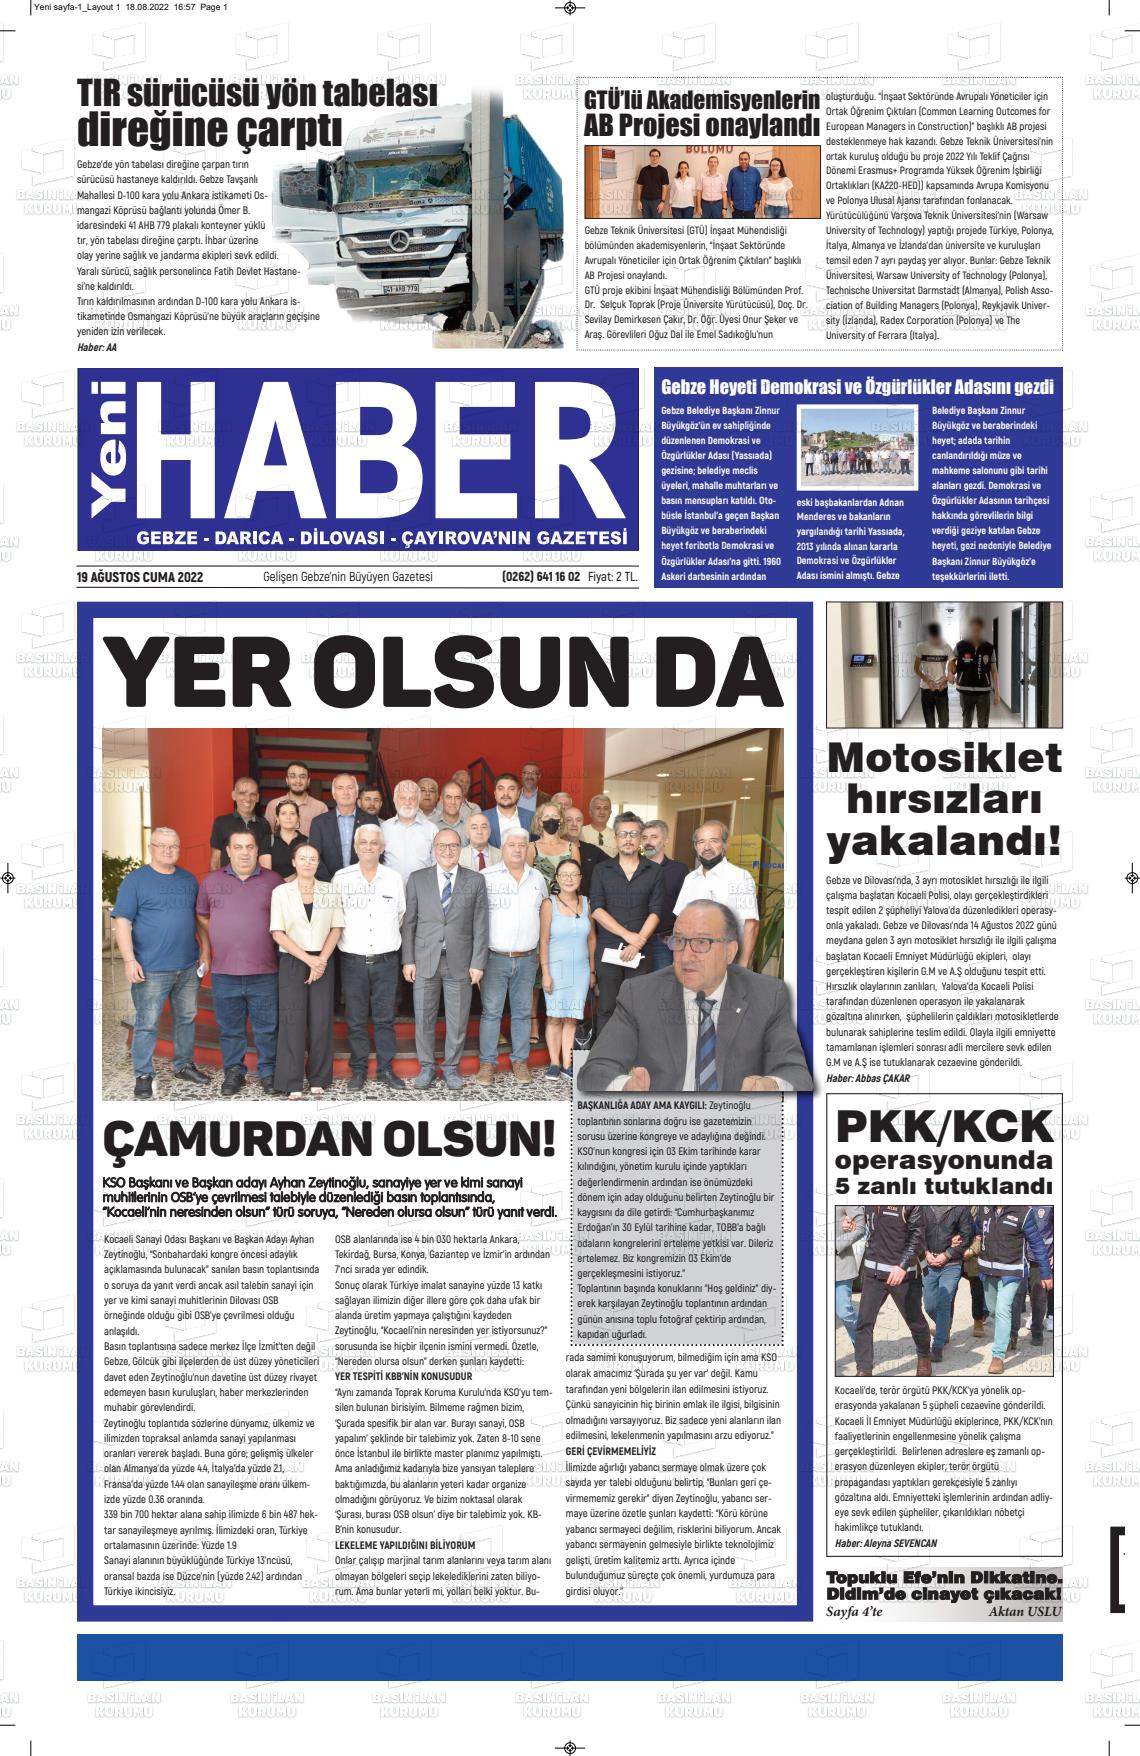 19 Ağustos 2022 Gebze Haber Gazete Manşeti